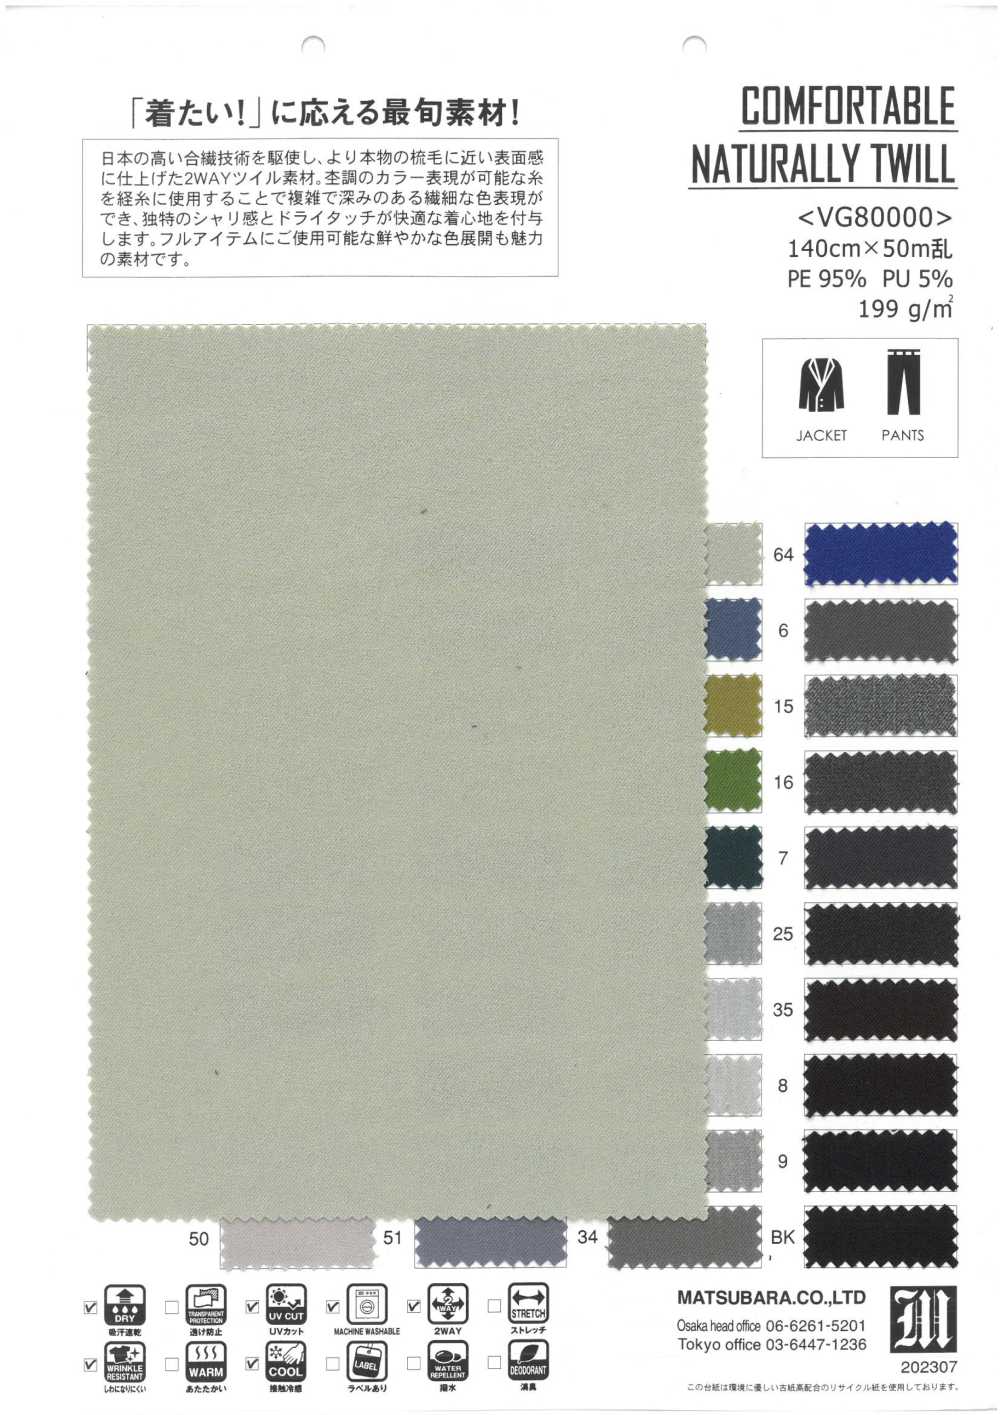 VG80000 CÓMODO SARGA NATURAL[Fabrica Textil] Matsubara